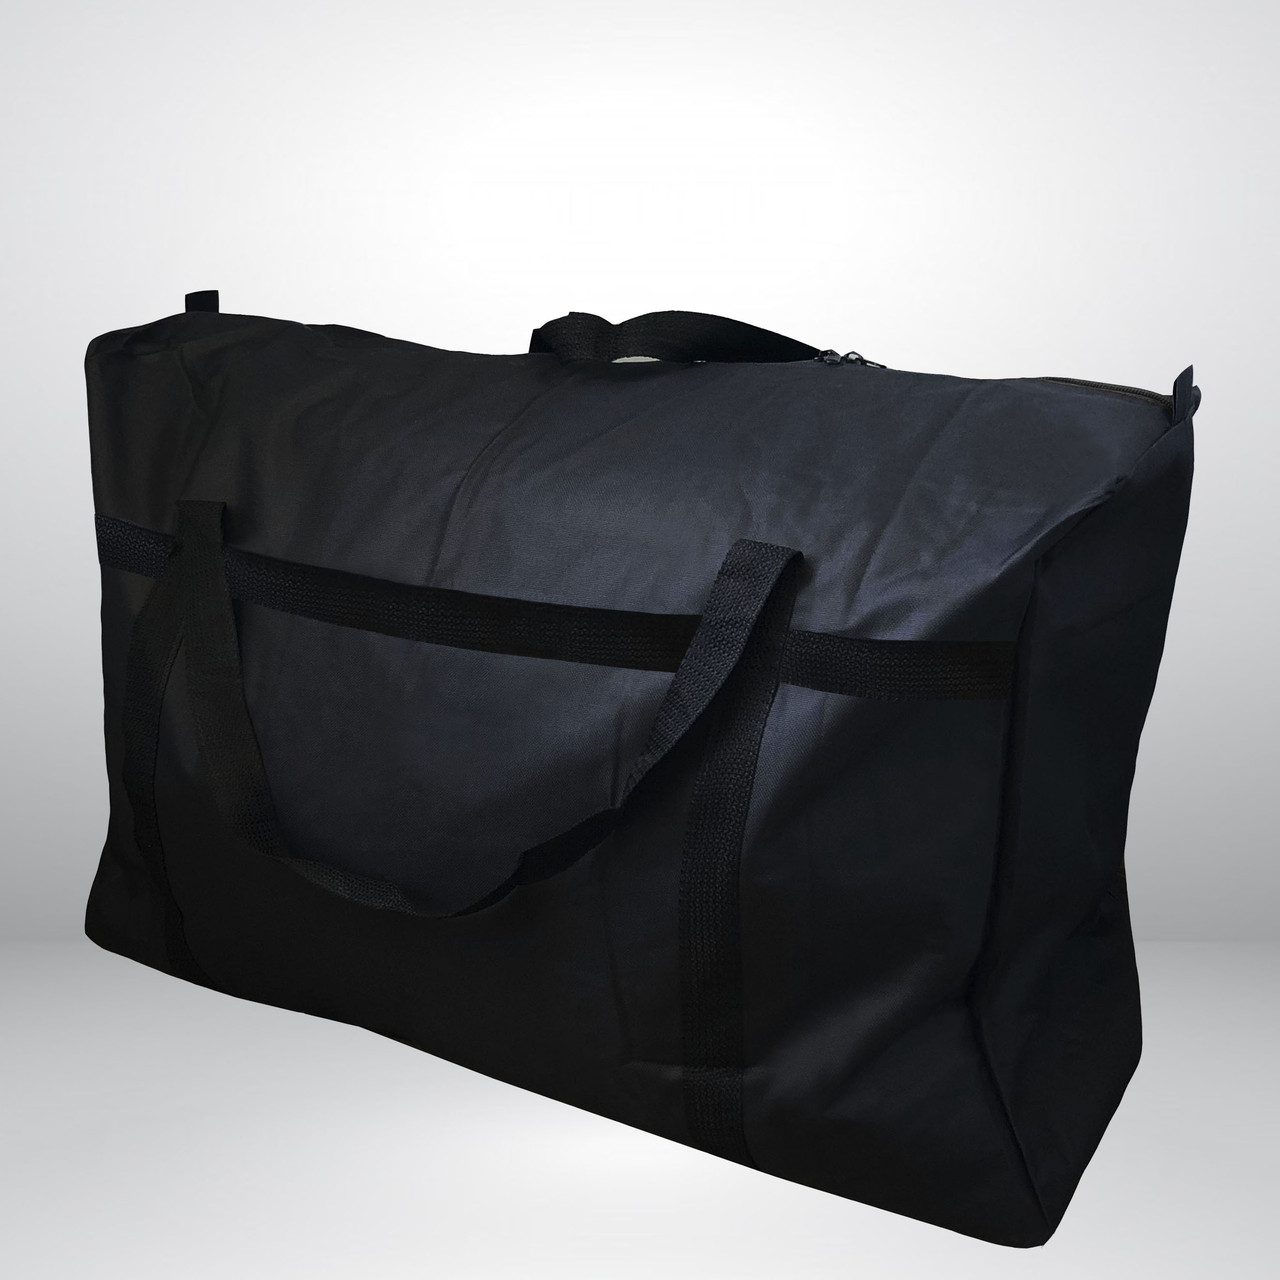 Містка чорна сумка баул 90 x 48 см тканинна водовідштовхувальна, дорожний пакет текстильний для речей, мішок для переїзду